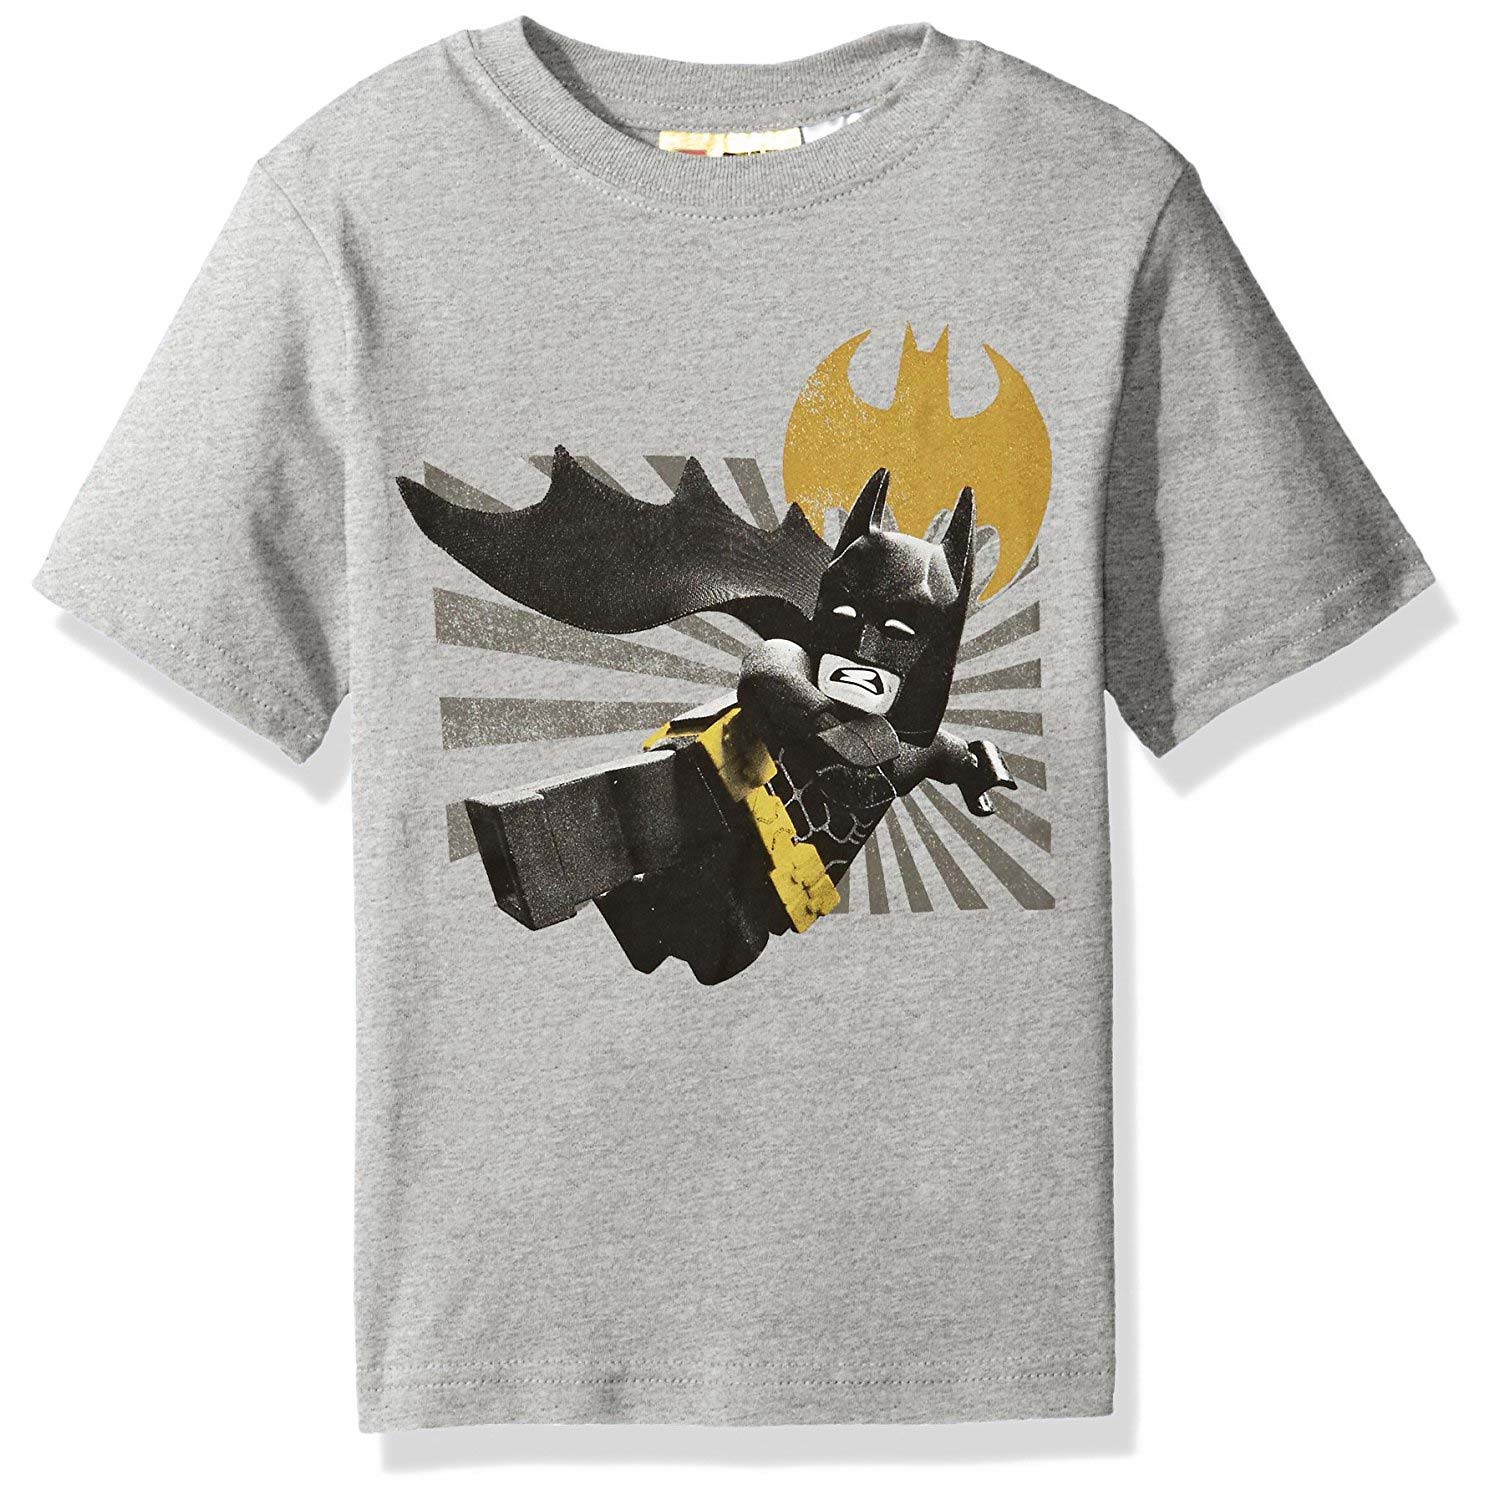 Batman Lego Movie Grey Youth Tee Shirt